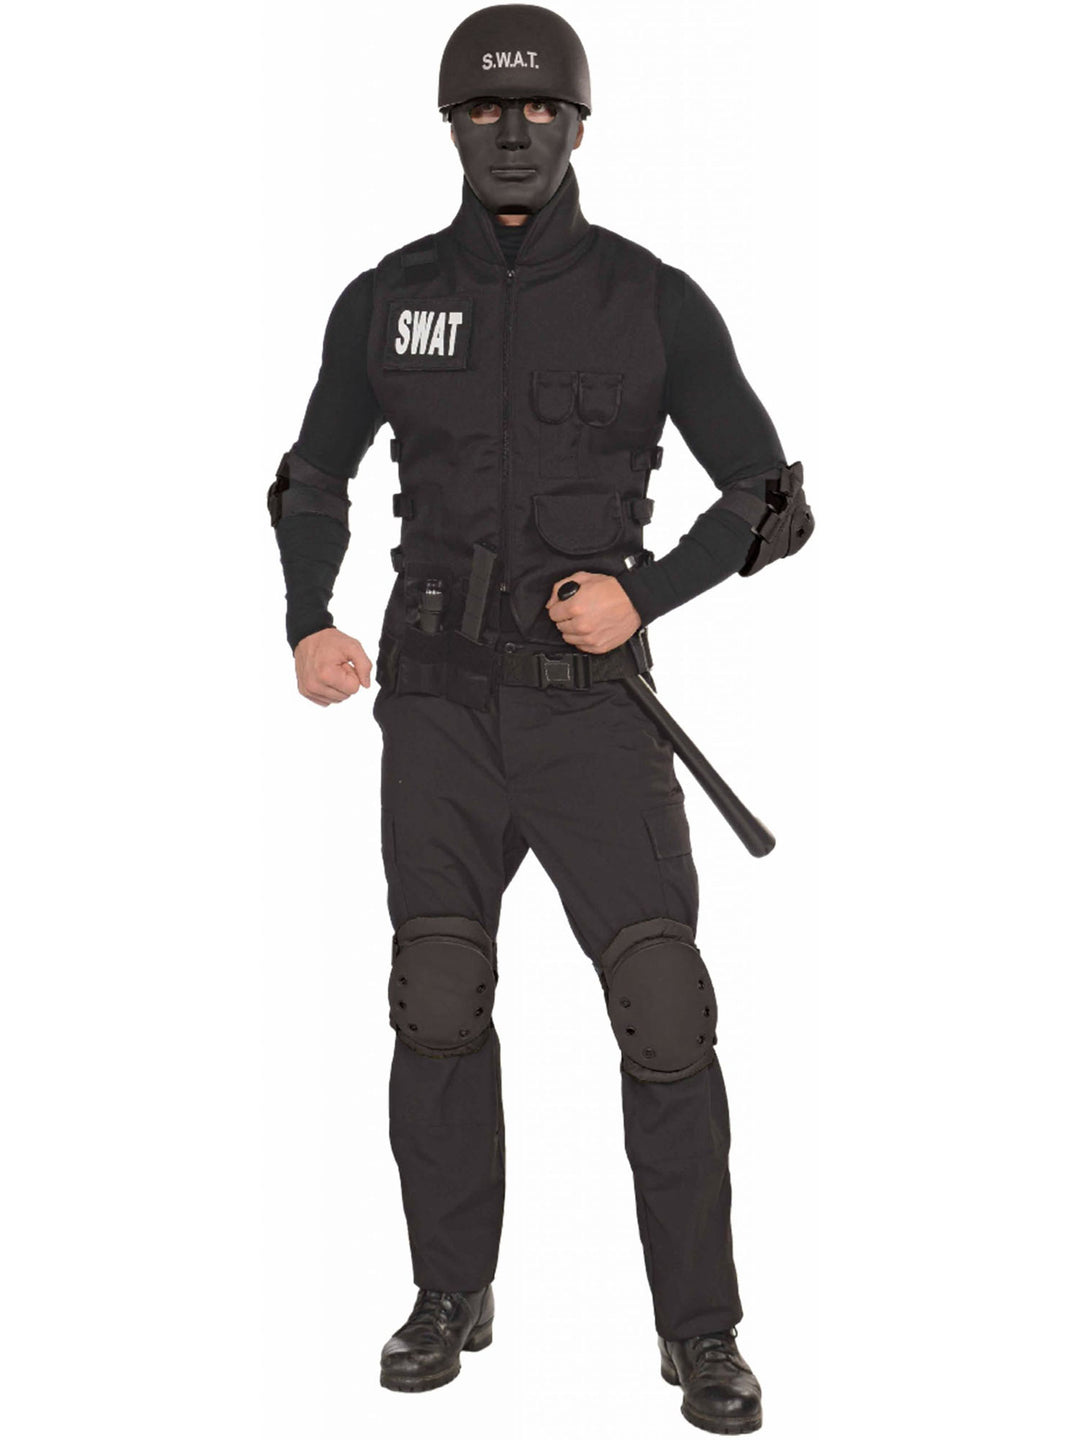 SWAT Mask Police Officer Black Tactical